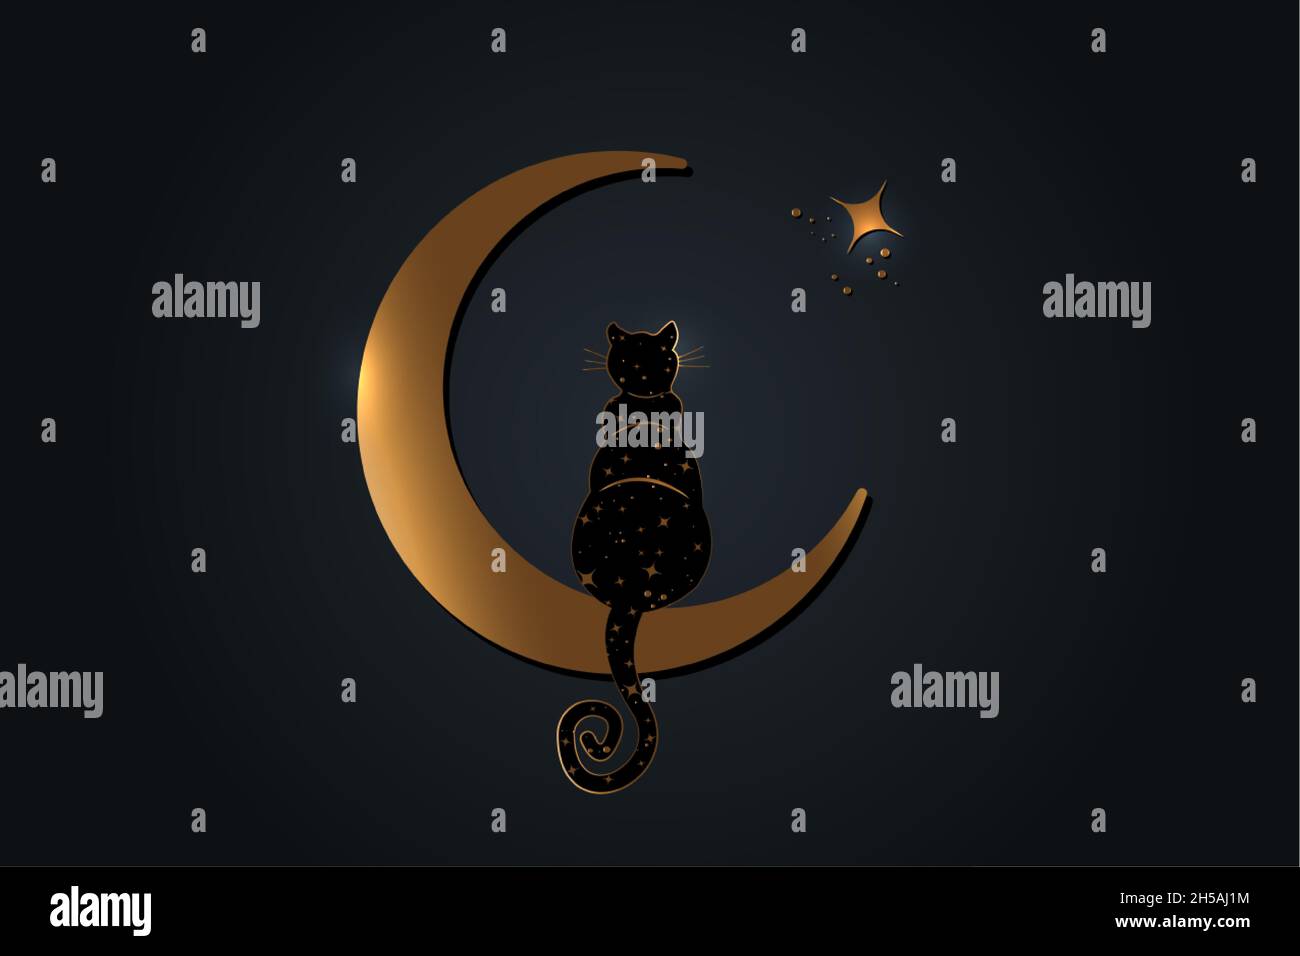 Gatto nero seduto sulla Luna crescente, guarda le stelle. Simbolo Golden wicca, stile boho. Illustrazione vettoriale isolata su sfondo nero Illustrazione Vettoriale